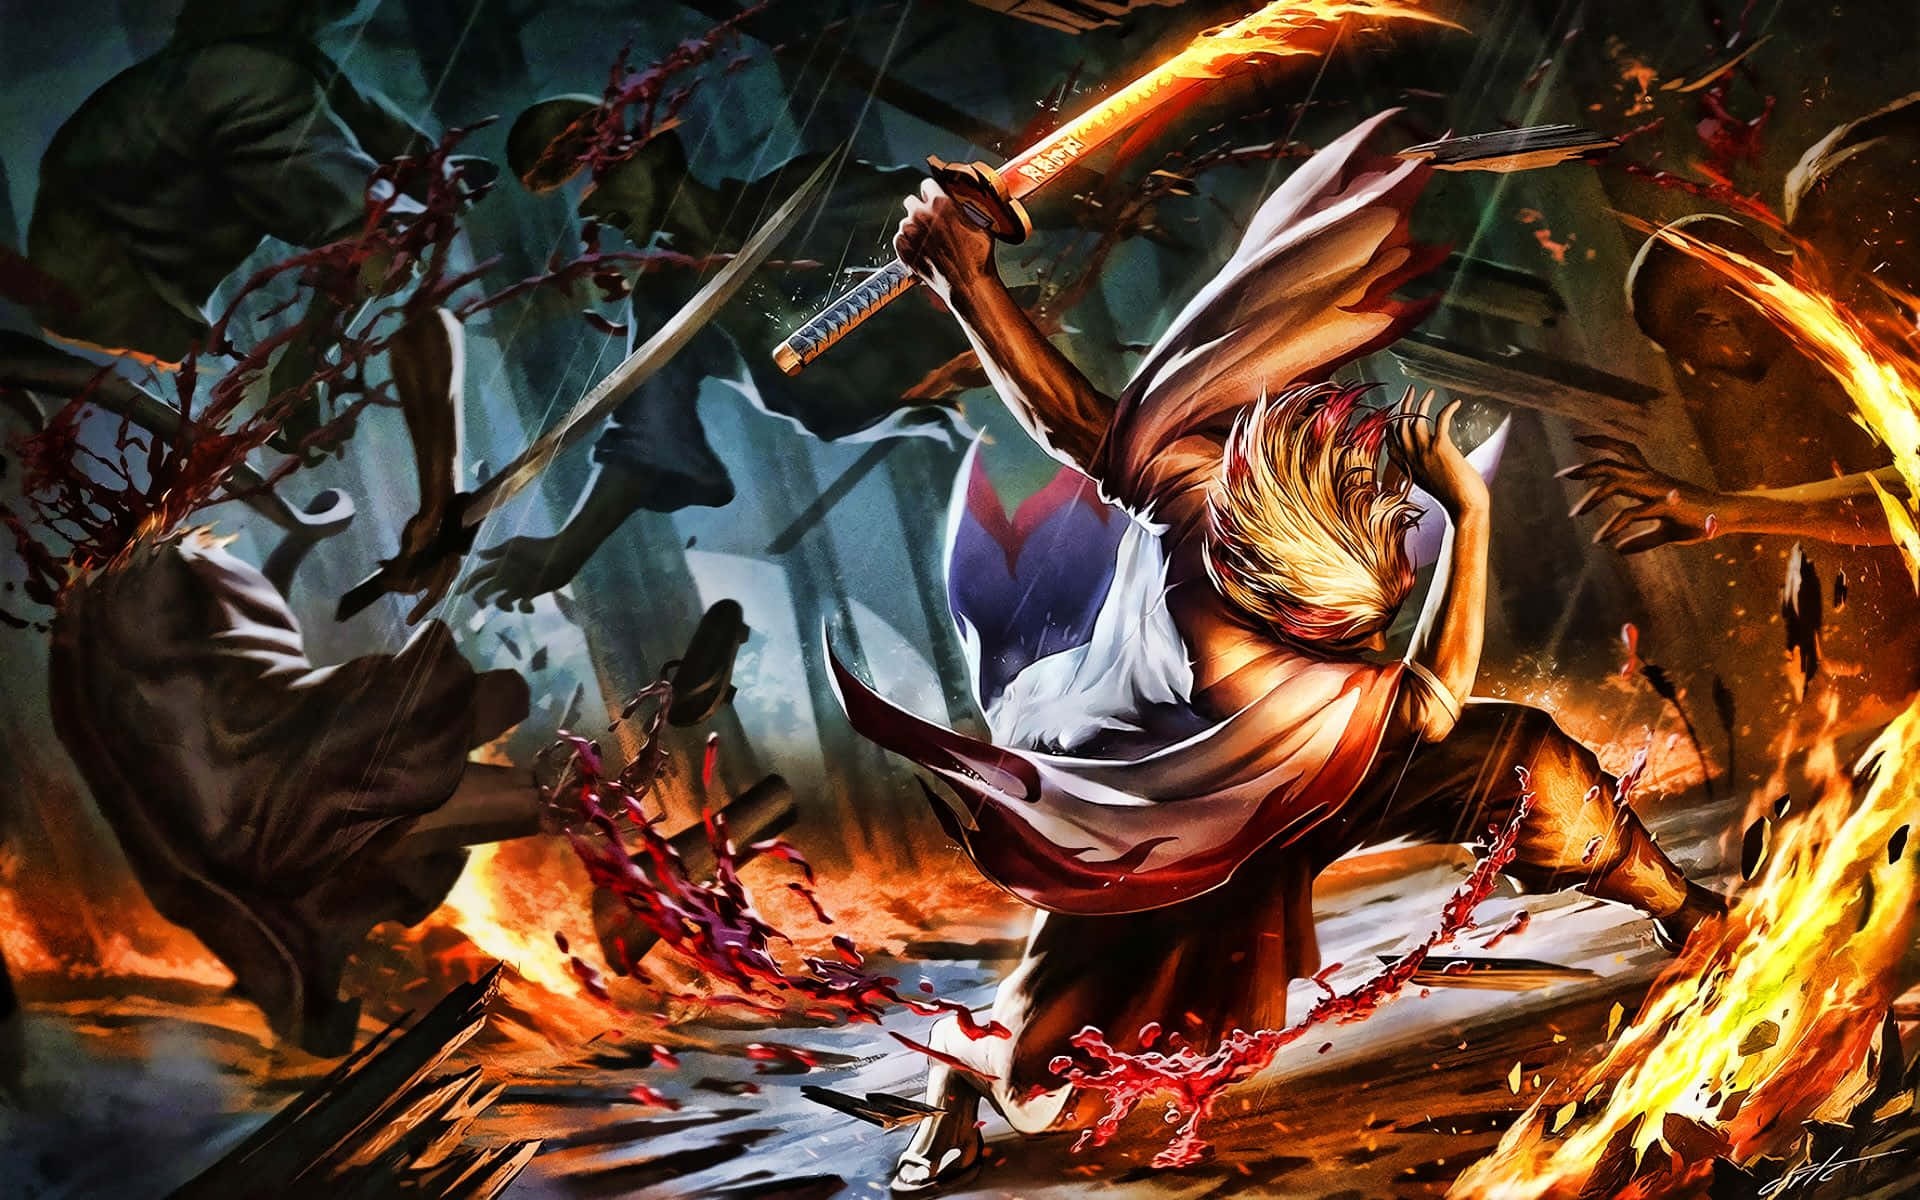 Fiery Rengoku - Demon Slayer Hero in Action